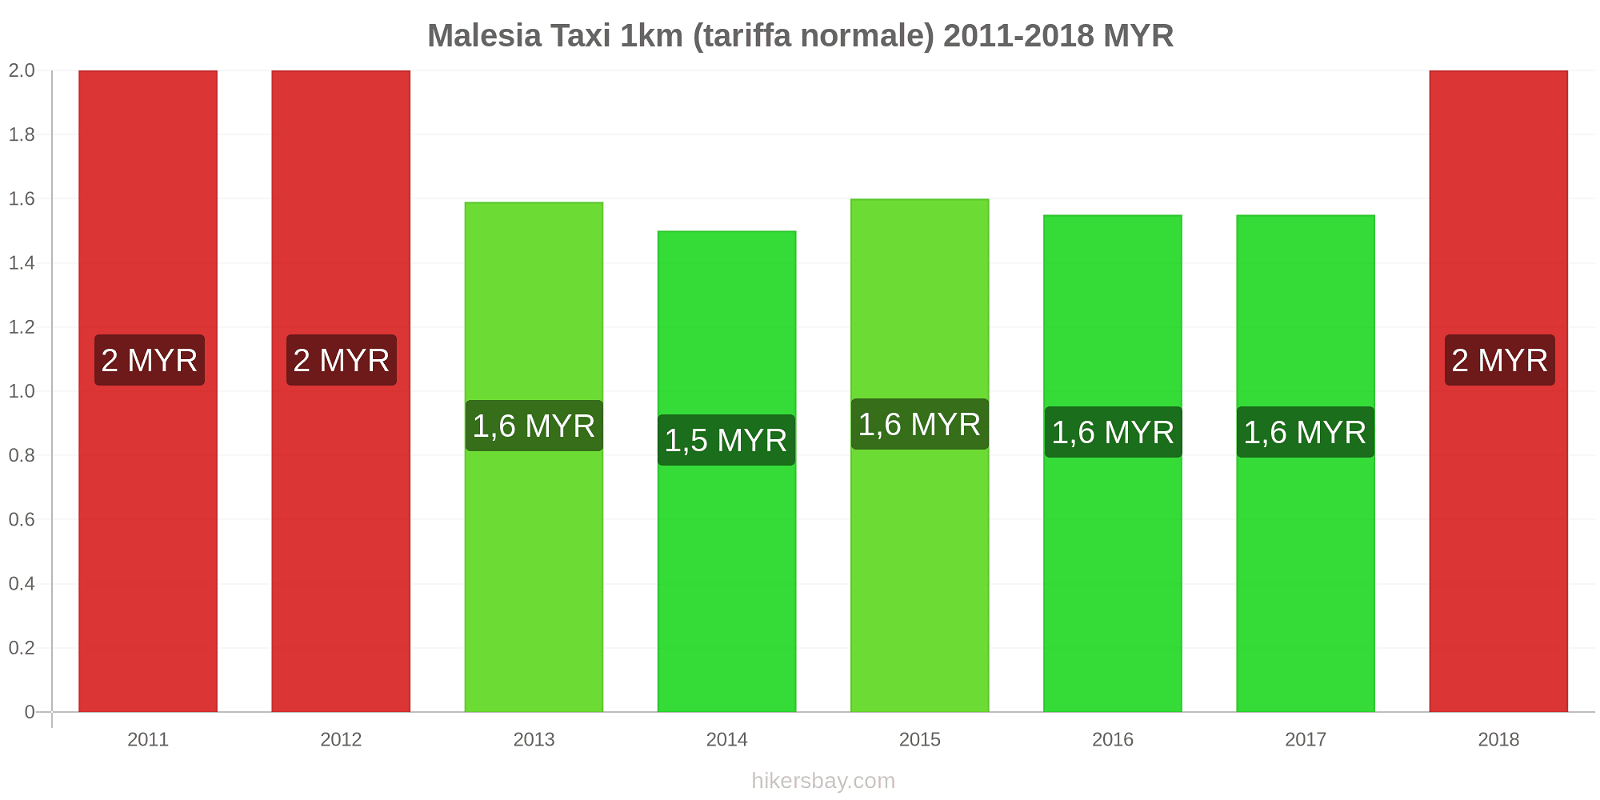 Malesia cambi di prezzo Taxi 1km (tariffa normale) hikersbay.com